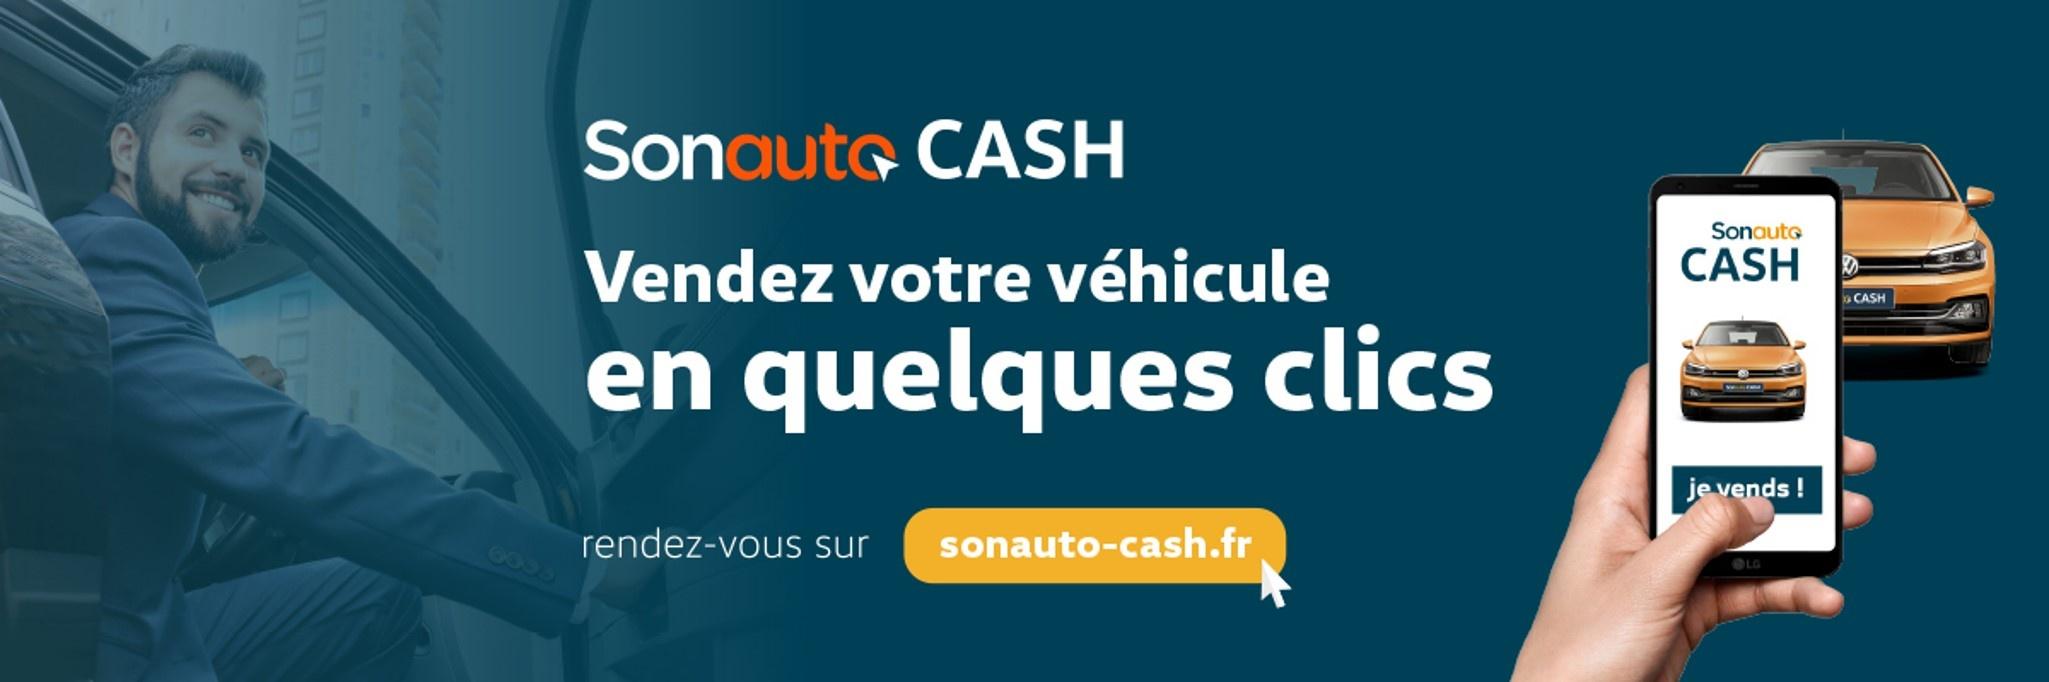 Riviera Technic - Volkswagen Utilitaires Mougins - Vendez votre véhicule en quelques clics avec Sonauto Cash